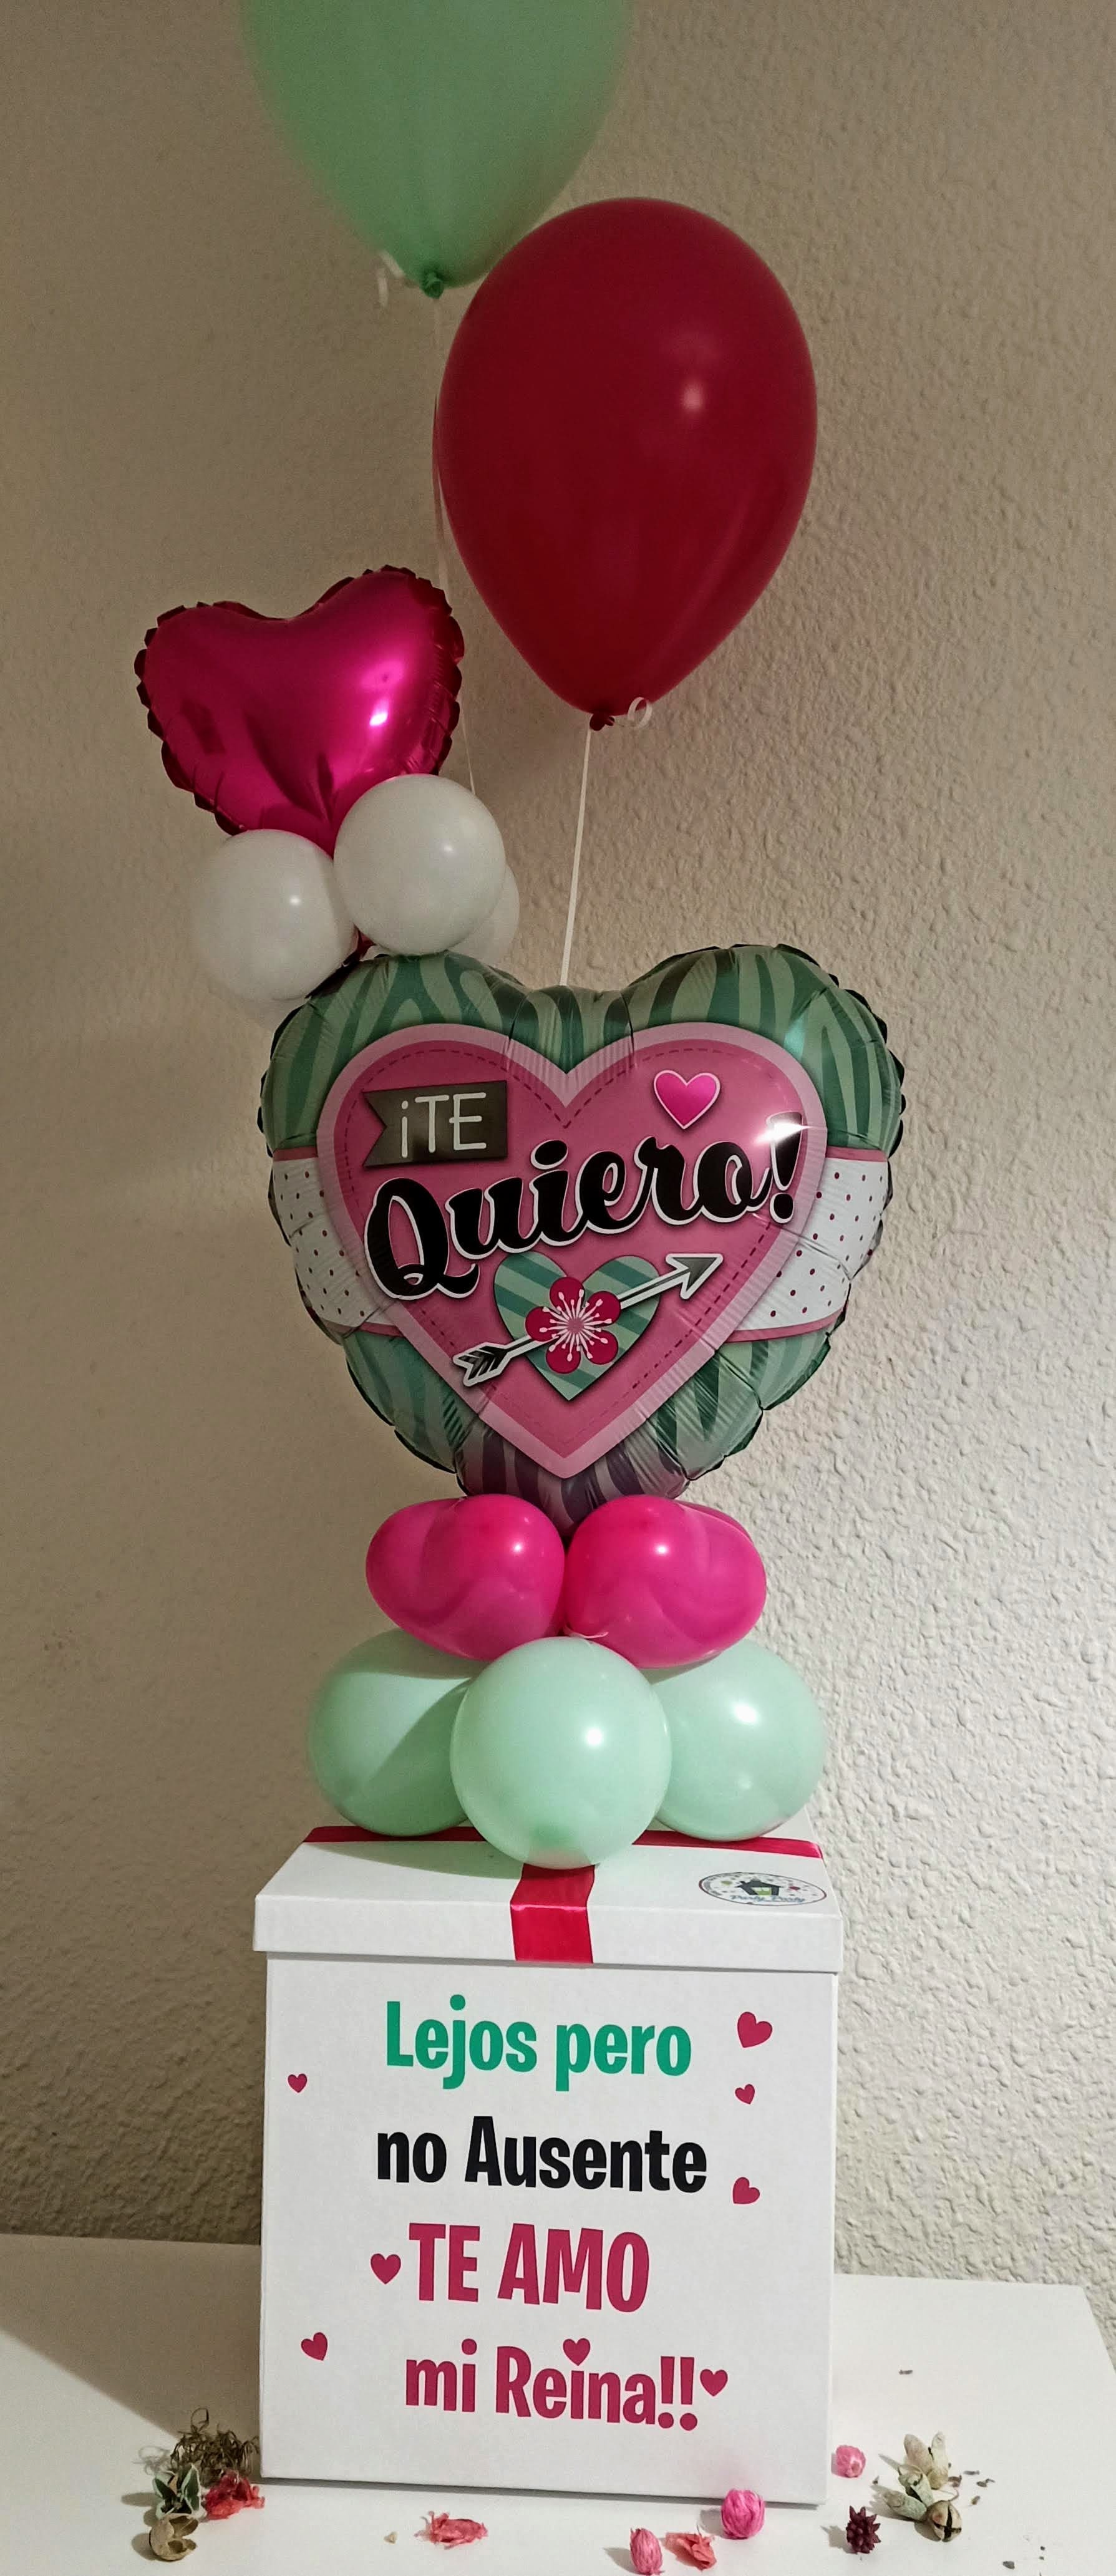 Cajas globos personalizadas aniversario amor